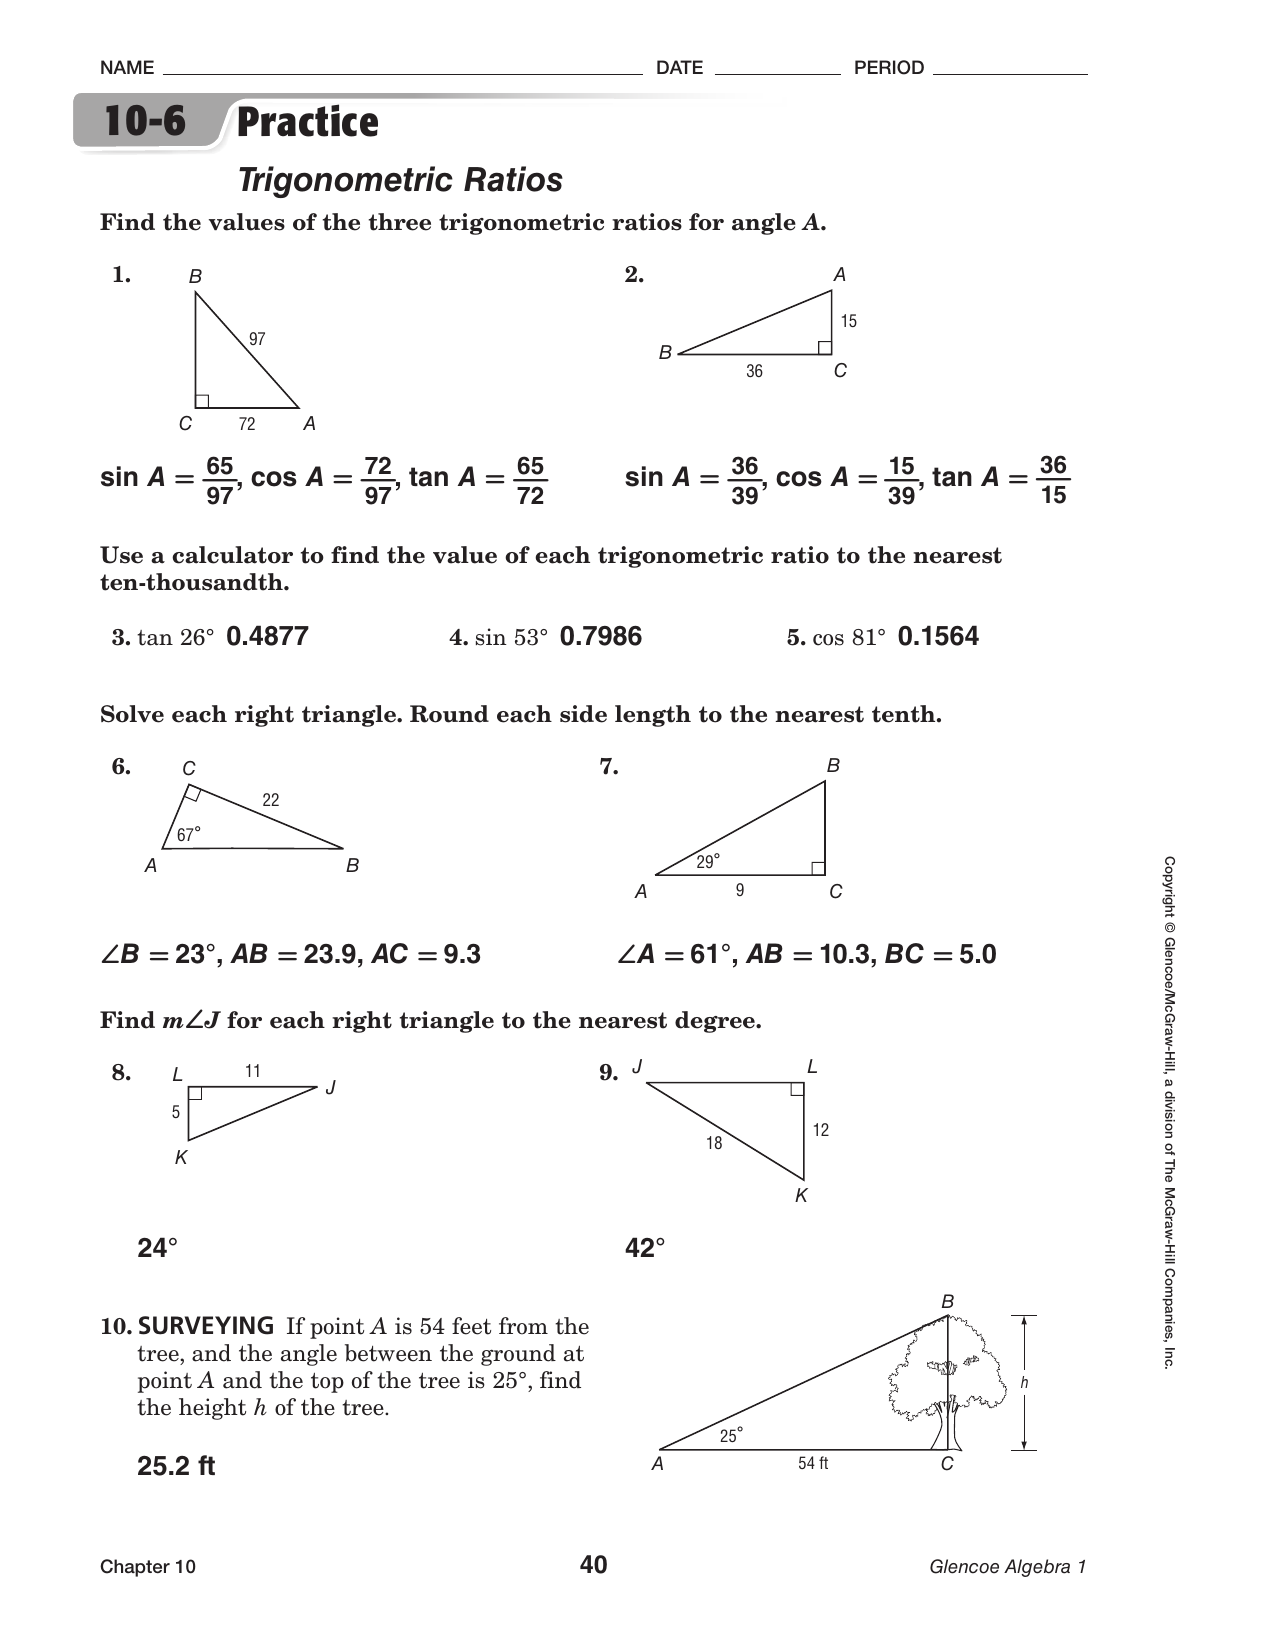 trigonometric ratios assignment answer key